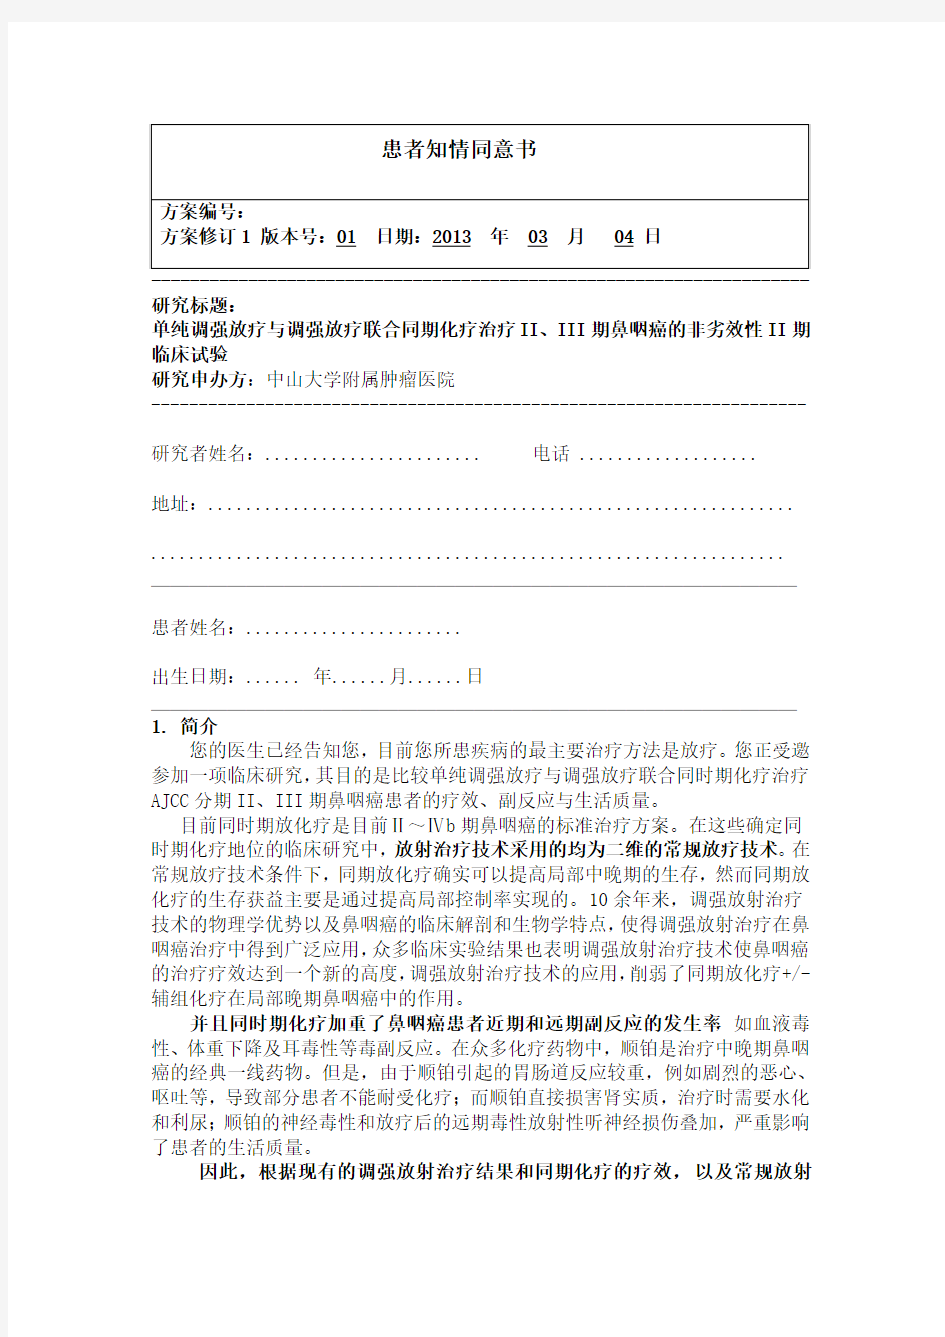 患者知情同意书-中国临床试验注册中心